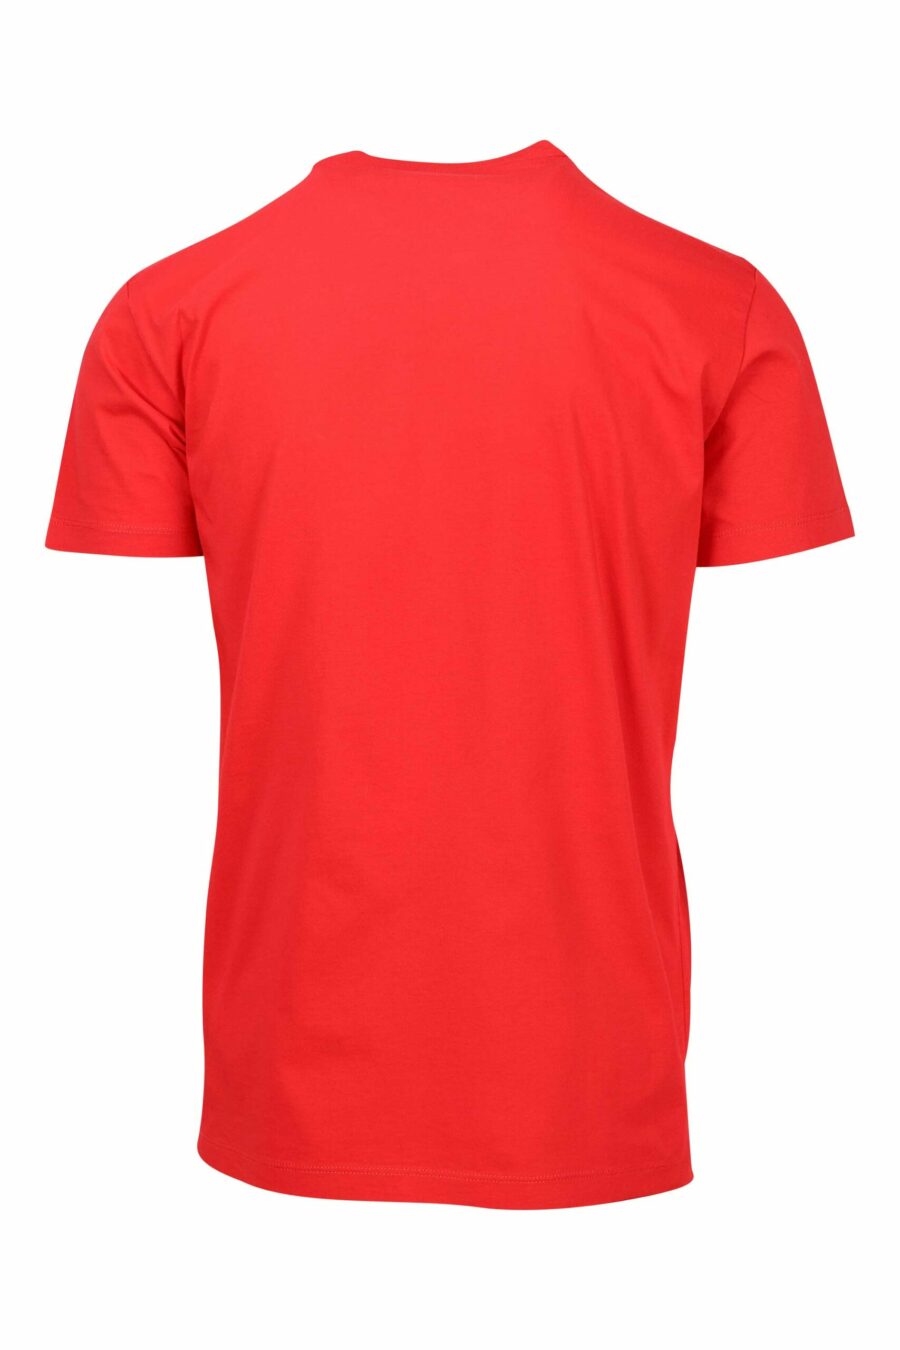 T-shirt vermelha com o pequeno logótipo "ceresio 9" - 8052134197134 1 scaled